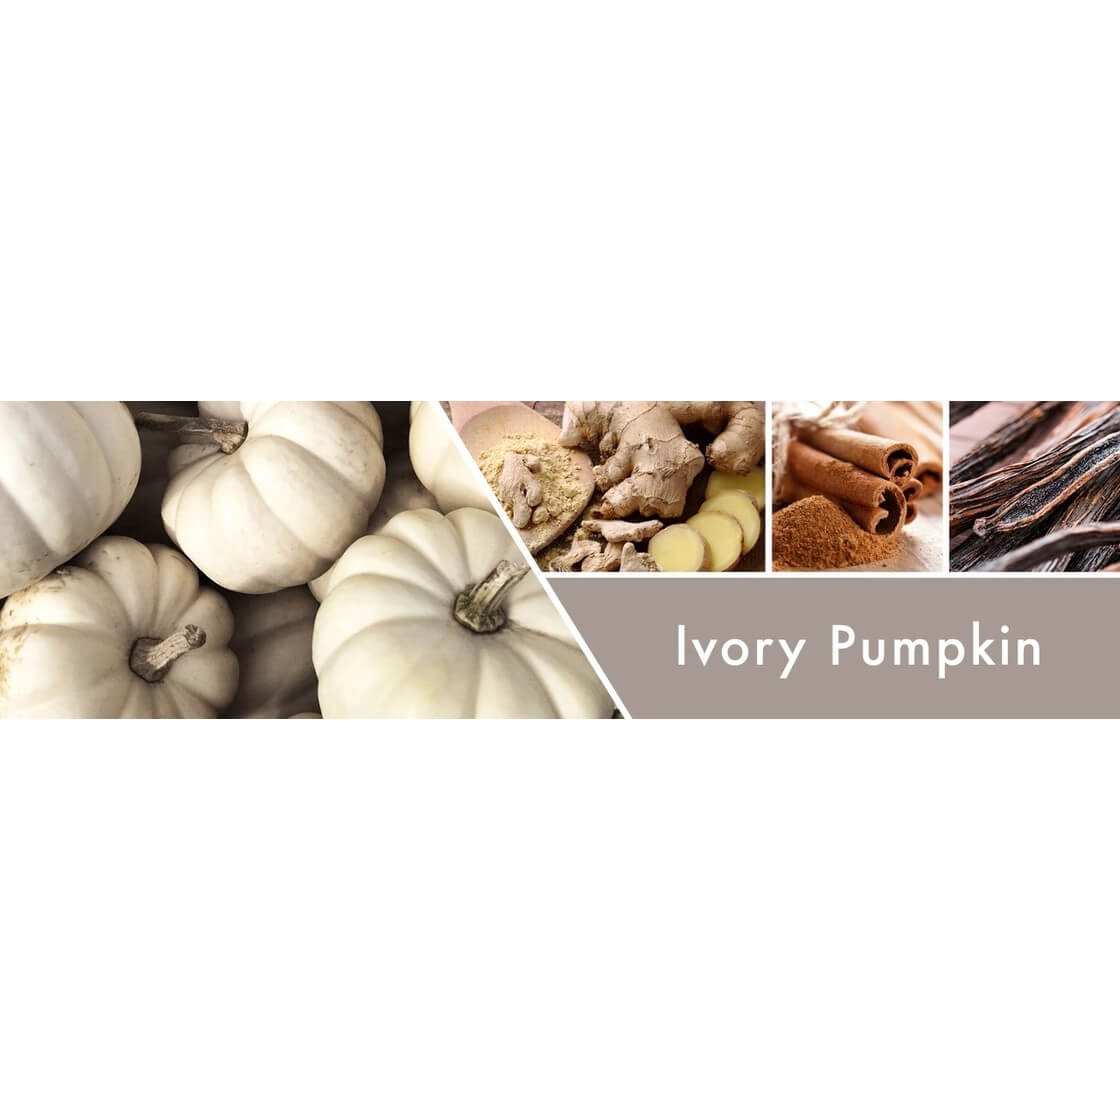 Ivory Pumpkin 453g